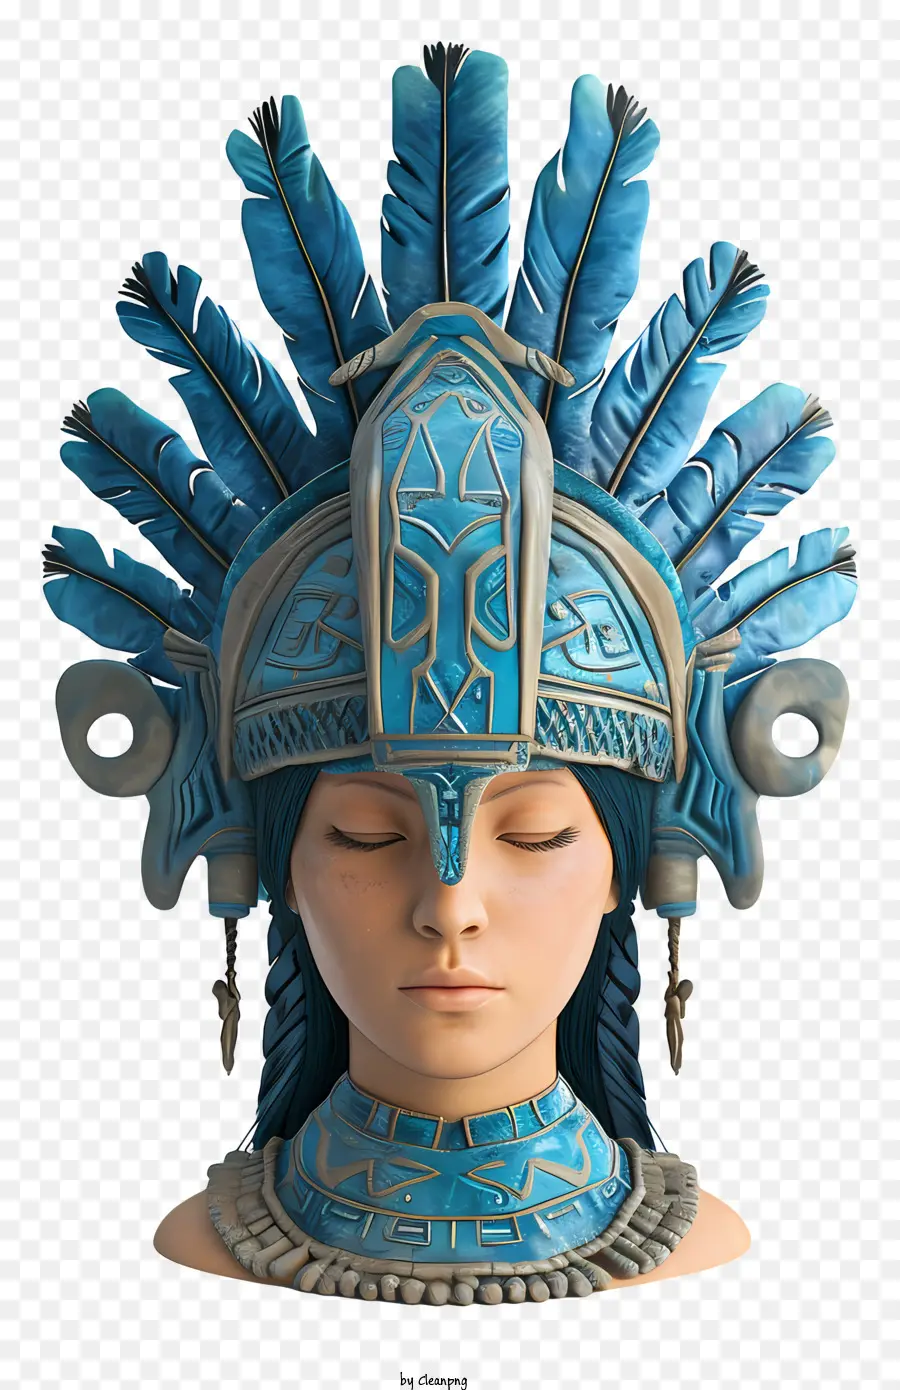 blaugrüne Kopfbedeckungstürkis - 3D -Rendering der Frau in indigenen Kopfschmuck